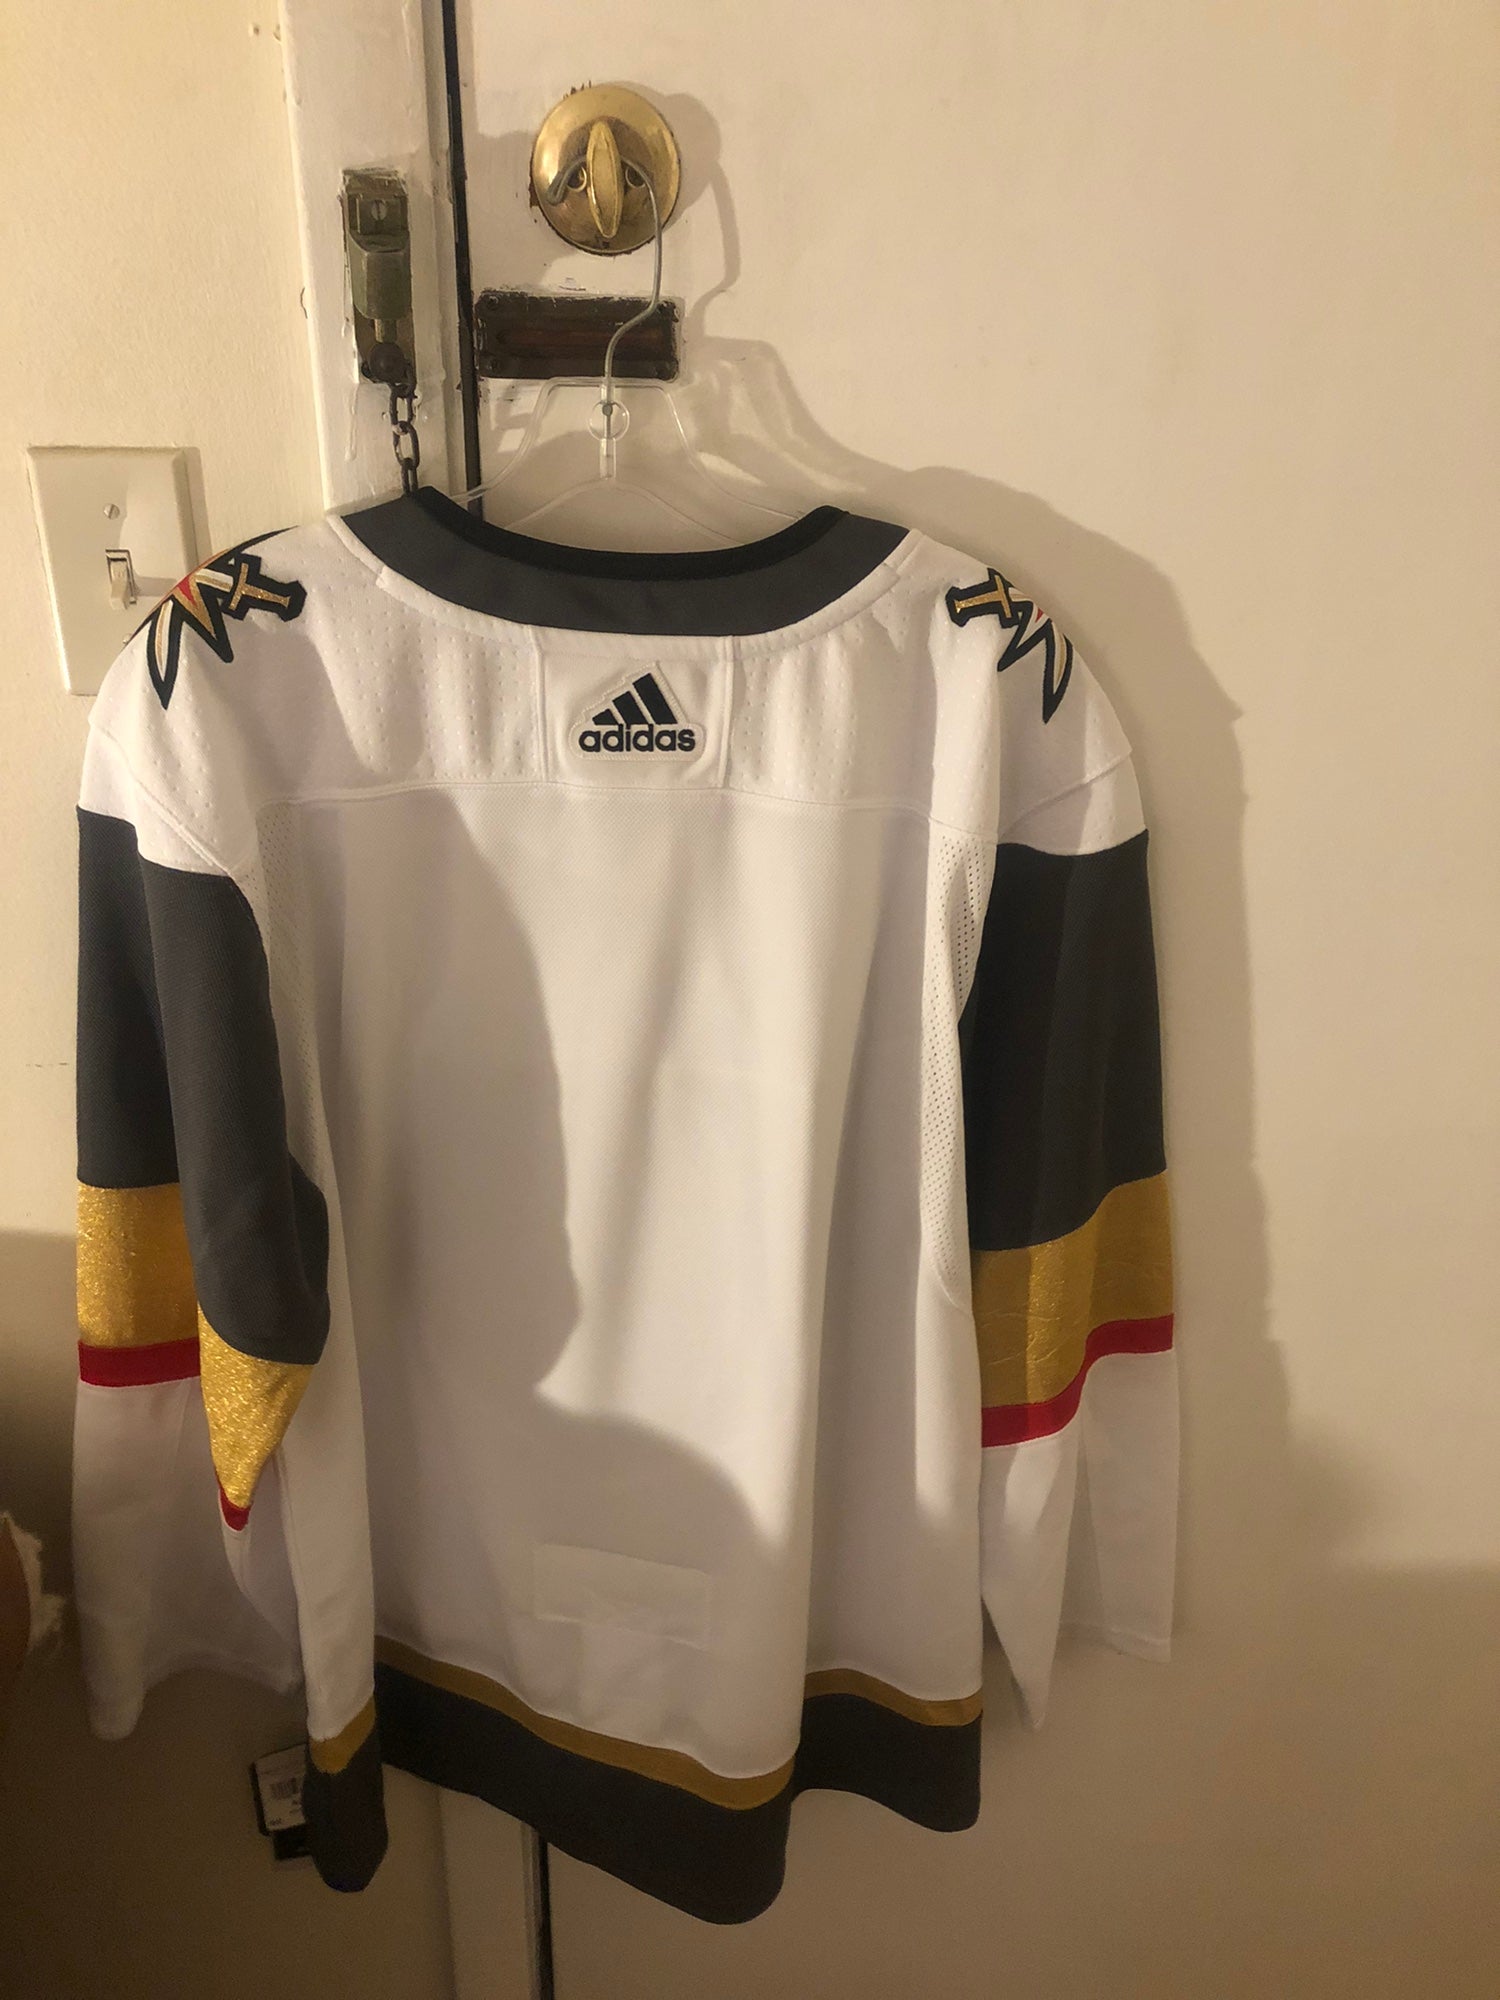 Las Vegas Golden Knights Winter Adidas NHL Jersey Hockey 52